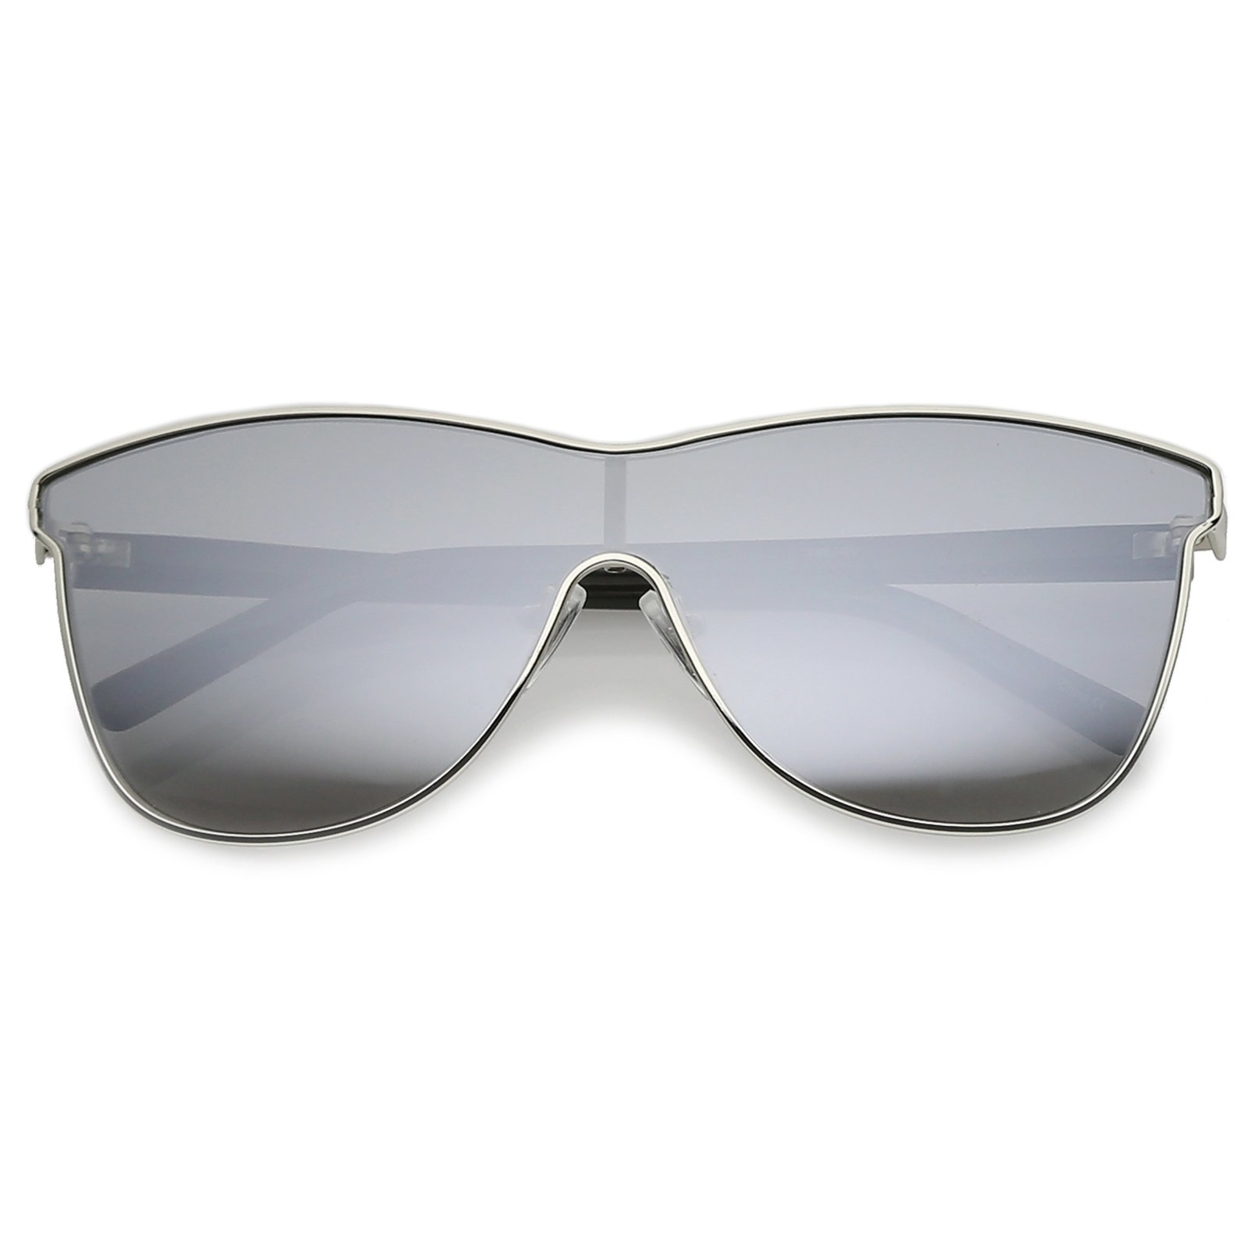 Futuristic Horn Rimmed Colored Mirror Mono Lens Cat Eye Sunglasses 65mm - Silver / Silver Mirror